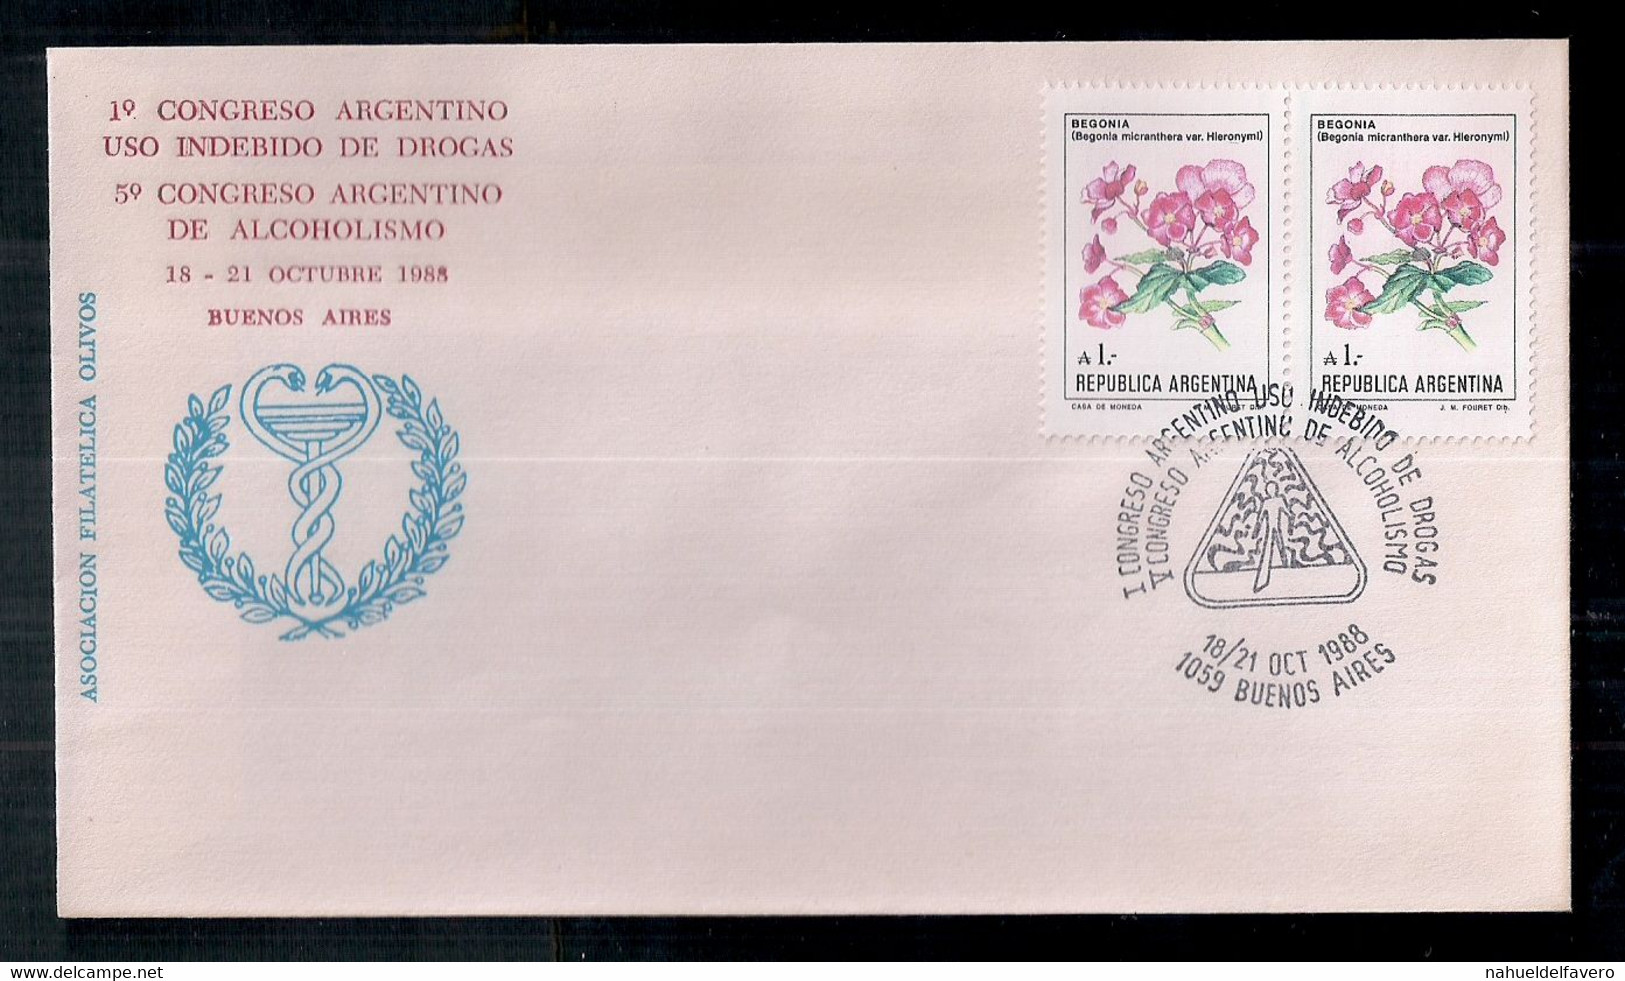 Argentina - Enveloppe Avec Cachets Spéciaux - 1988 - 1°Congrès Argentin - Toxicomanie / 9° Congrès Argentin De L'alcooli - Droga